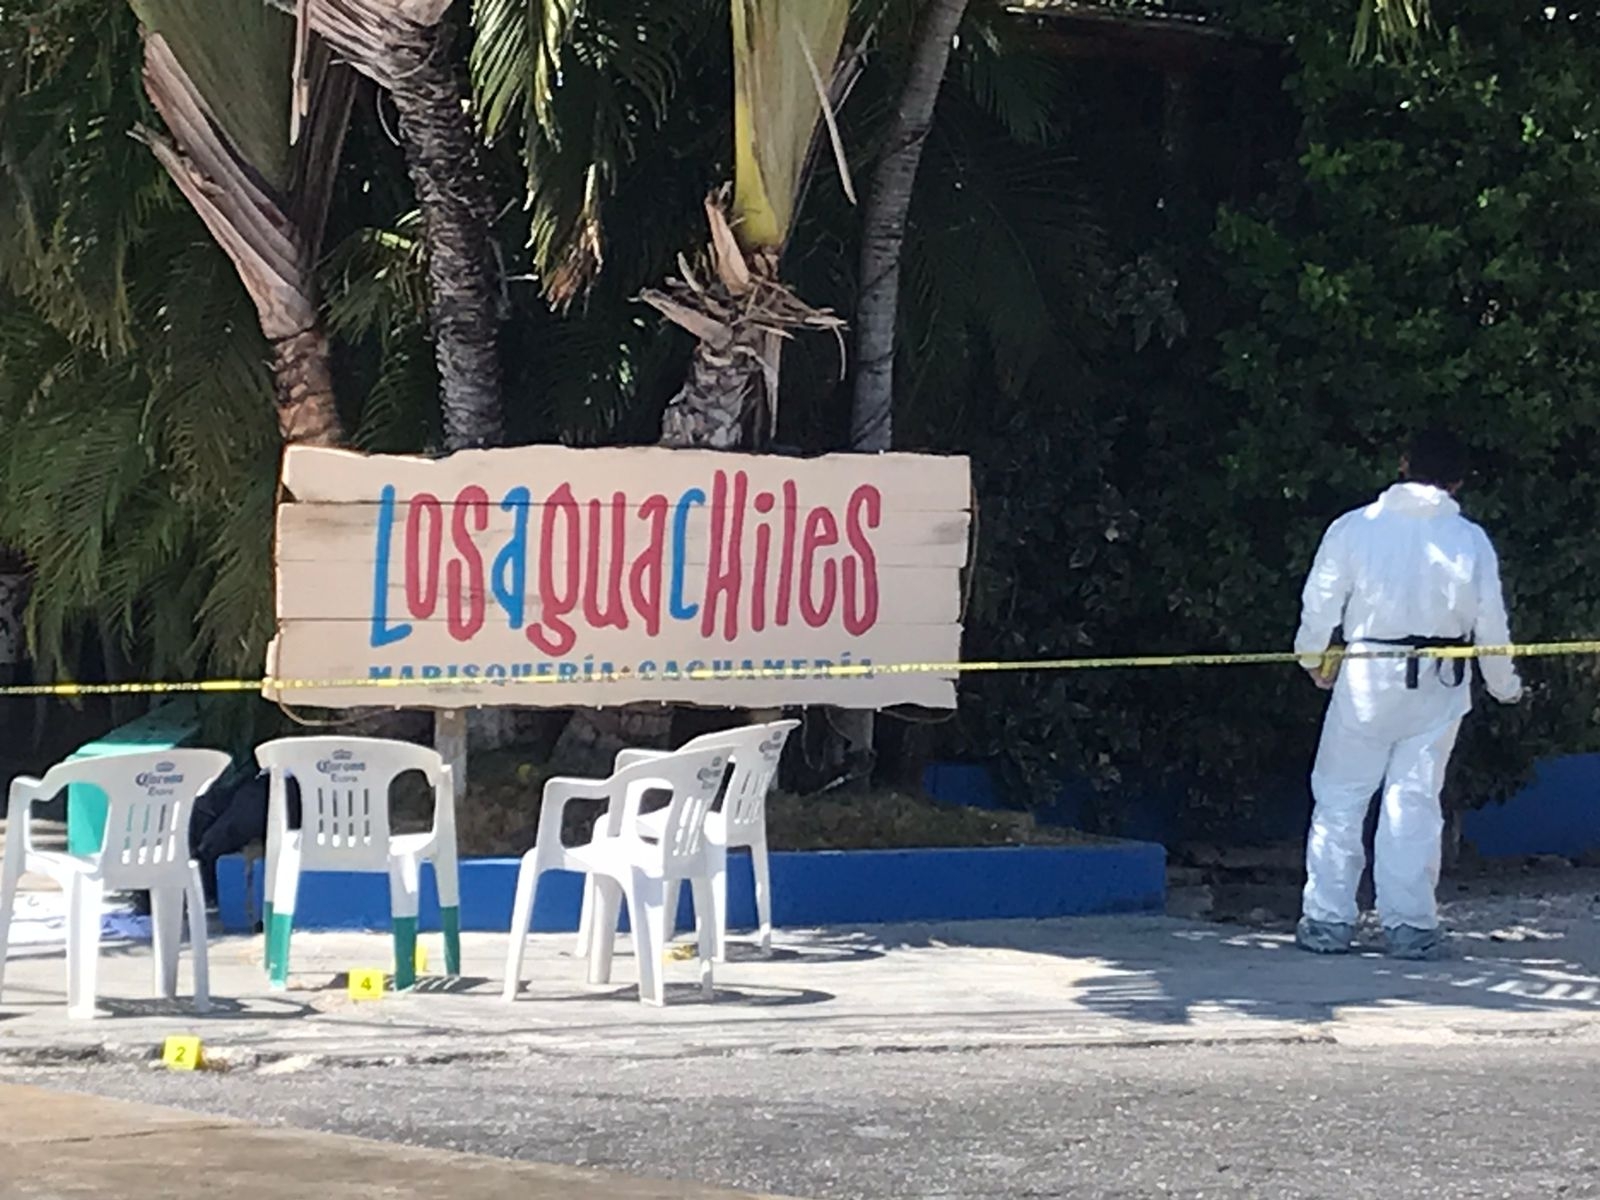 Ejecutan a un hombre afuera del restaurante "Los Aguachiles" en la avenida Nichupté en Cancún